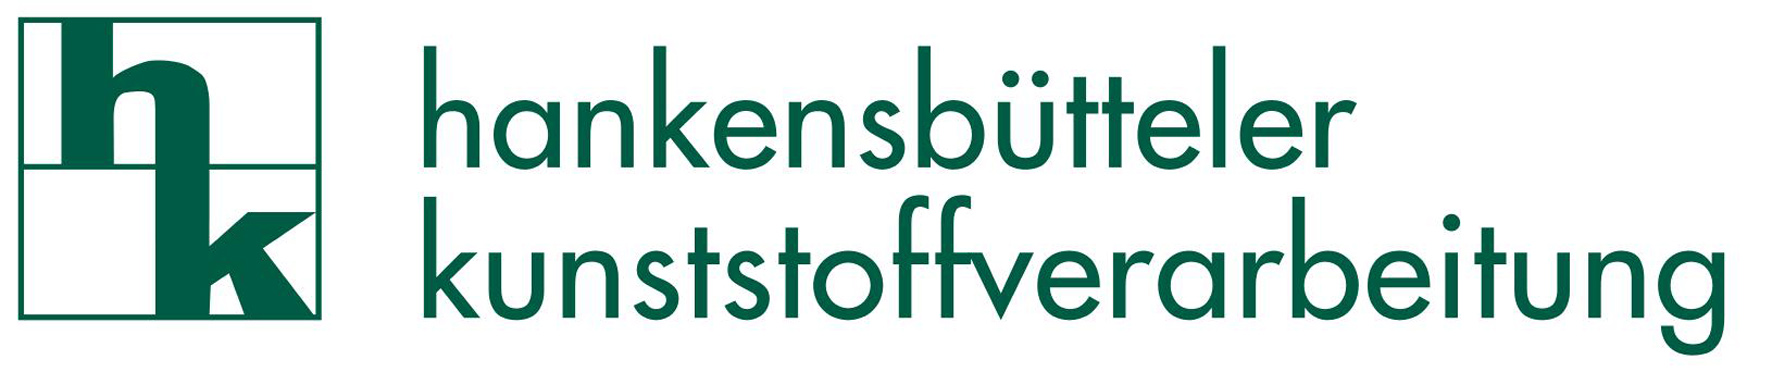 hankensbütteler kunststoffverarbeitung GmbH & Co.KG - Hankensbüttel - Kunststoff - Spritzguss